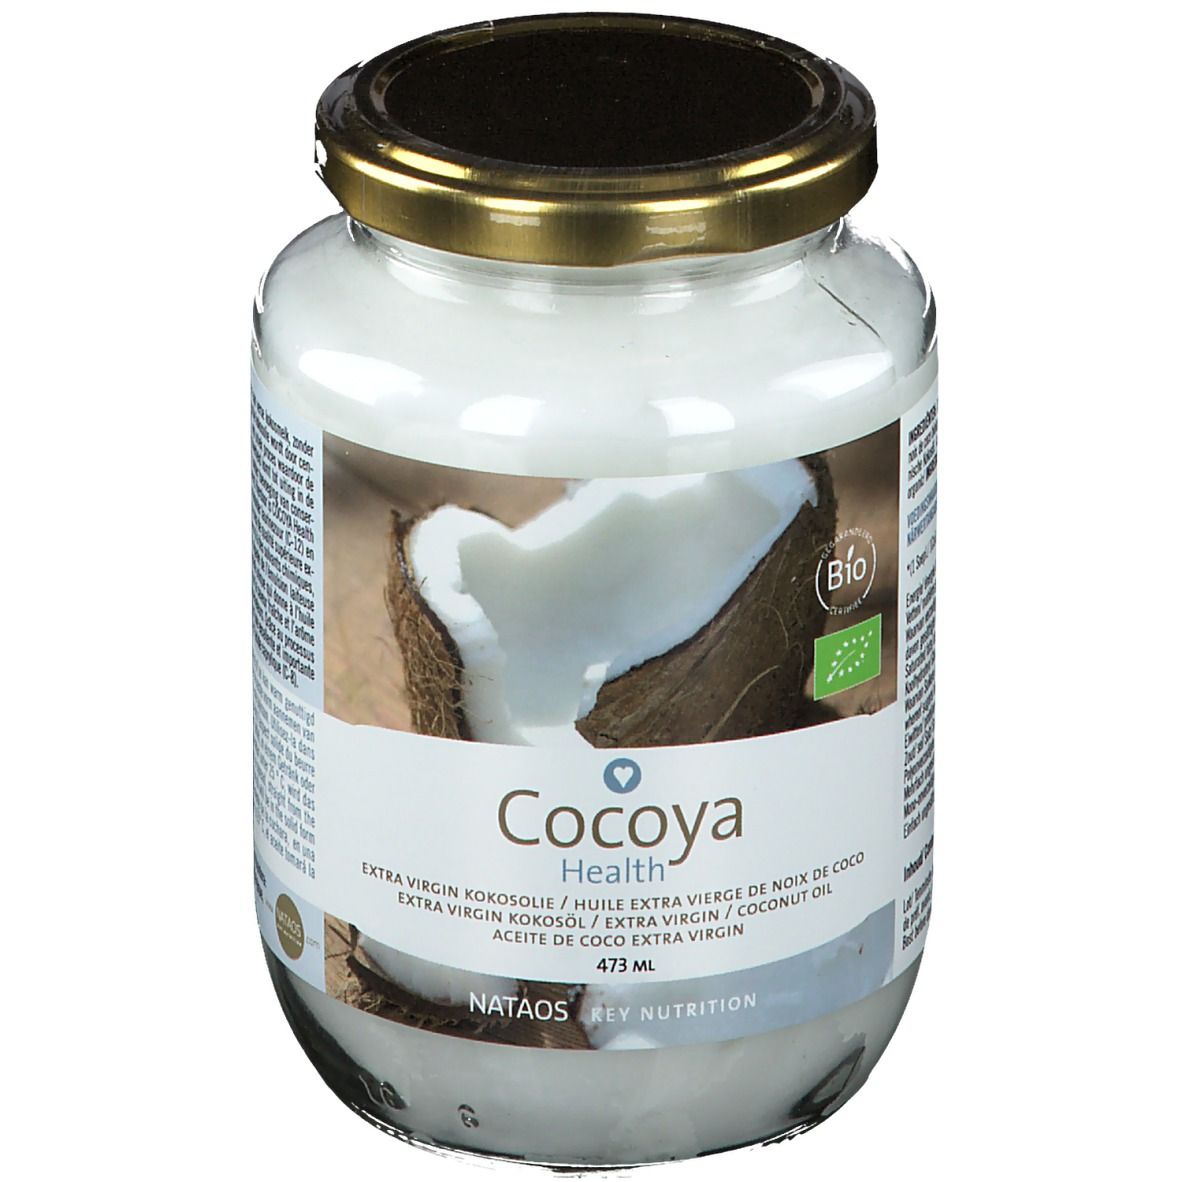 Nataos Key Nutrition Cocoya Health Huile de noix de coco Bio